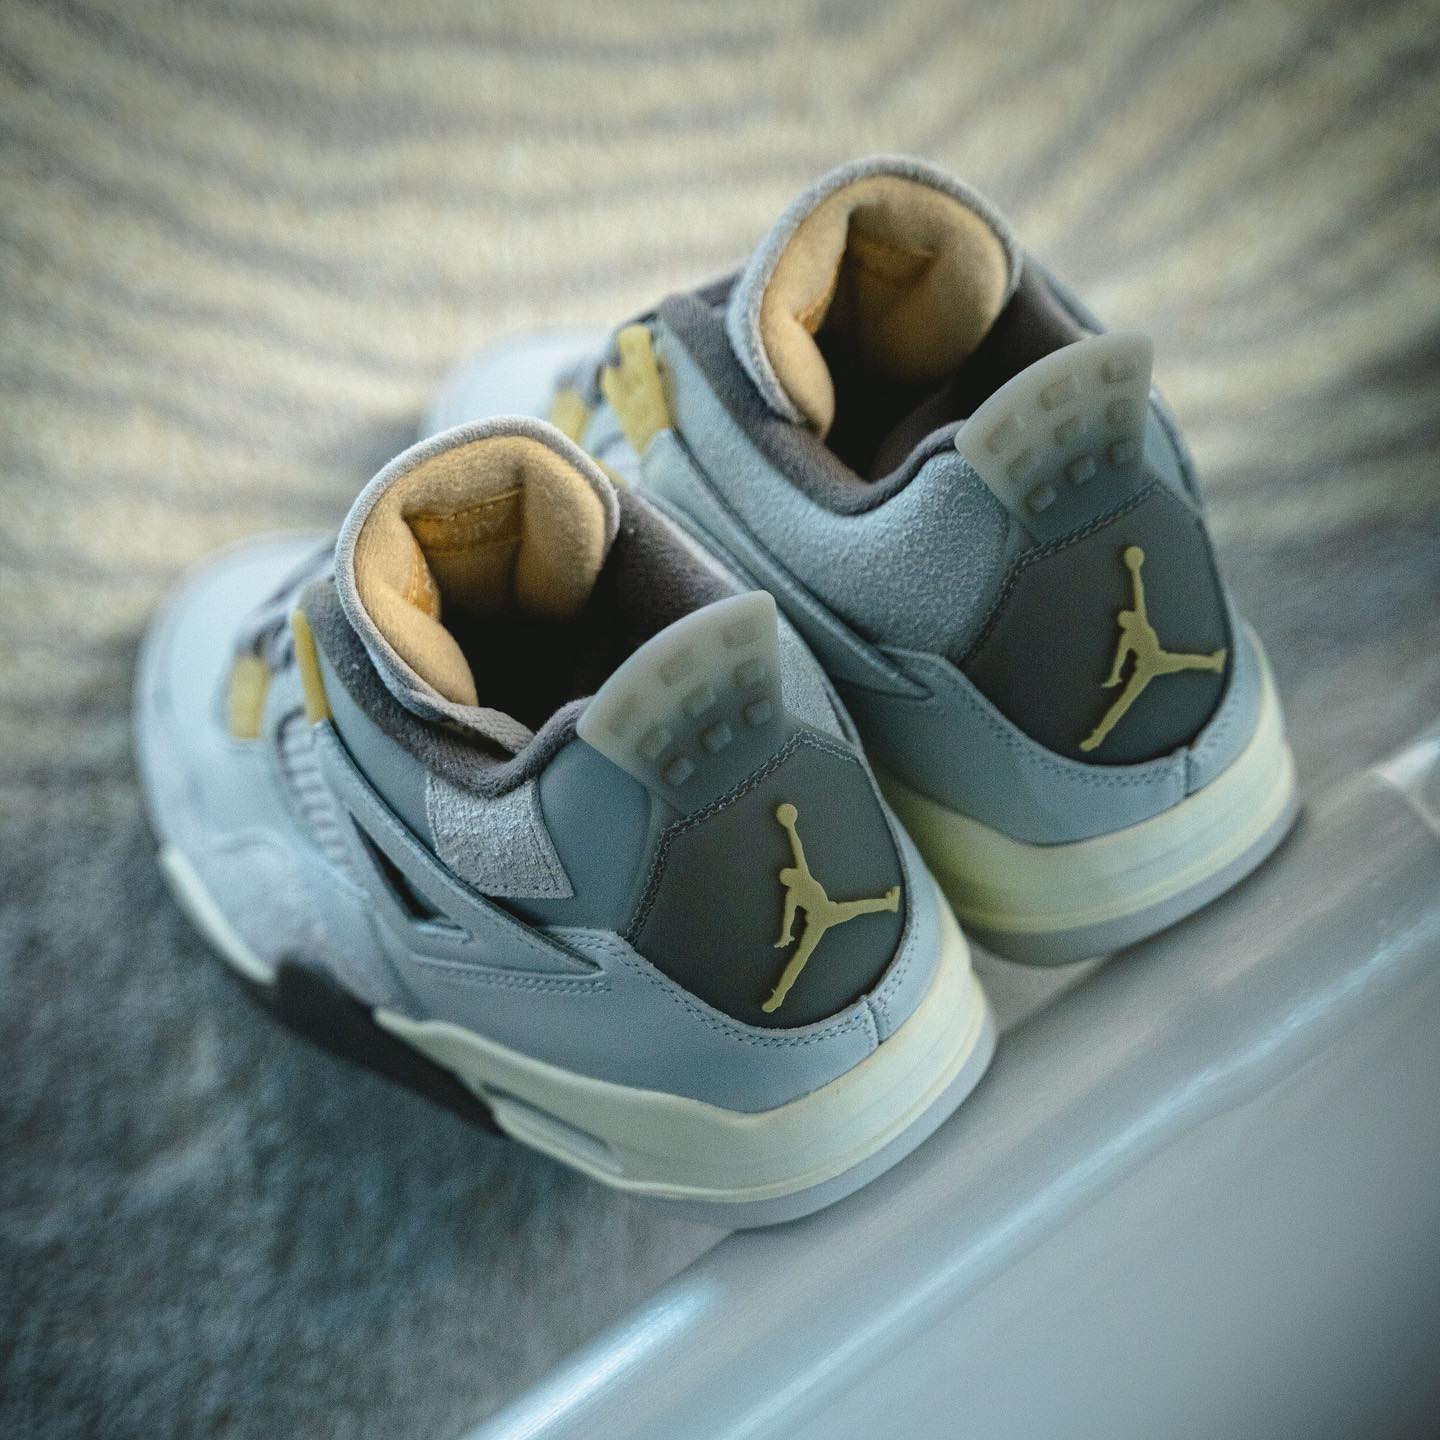 Thiết kế đặc trưng của Air Jordan 4